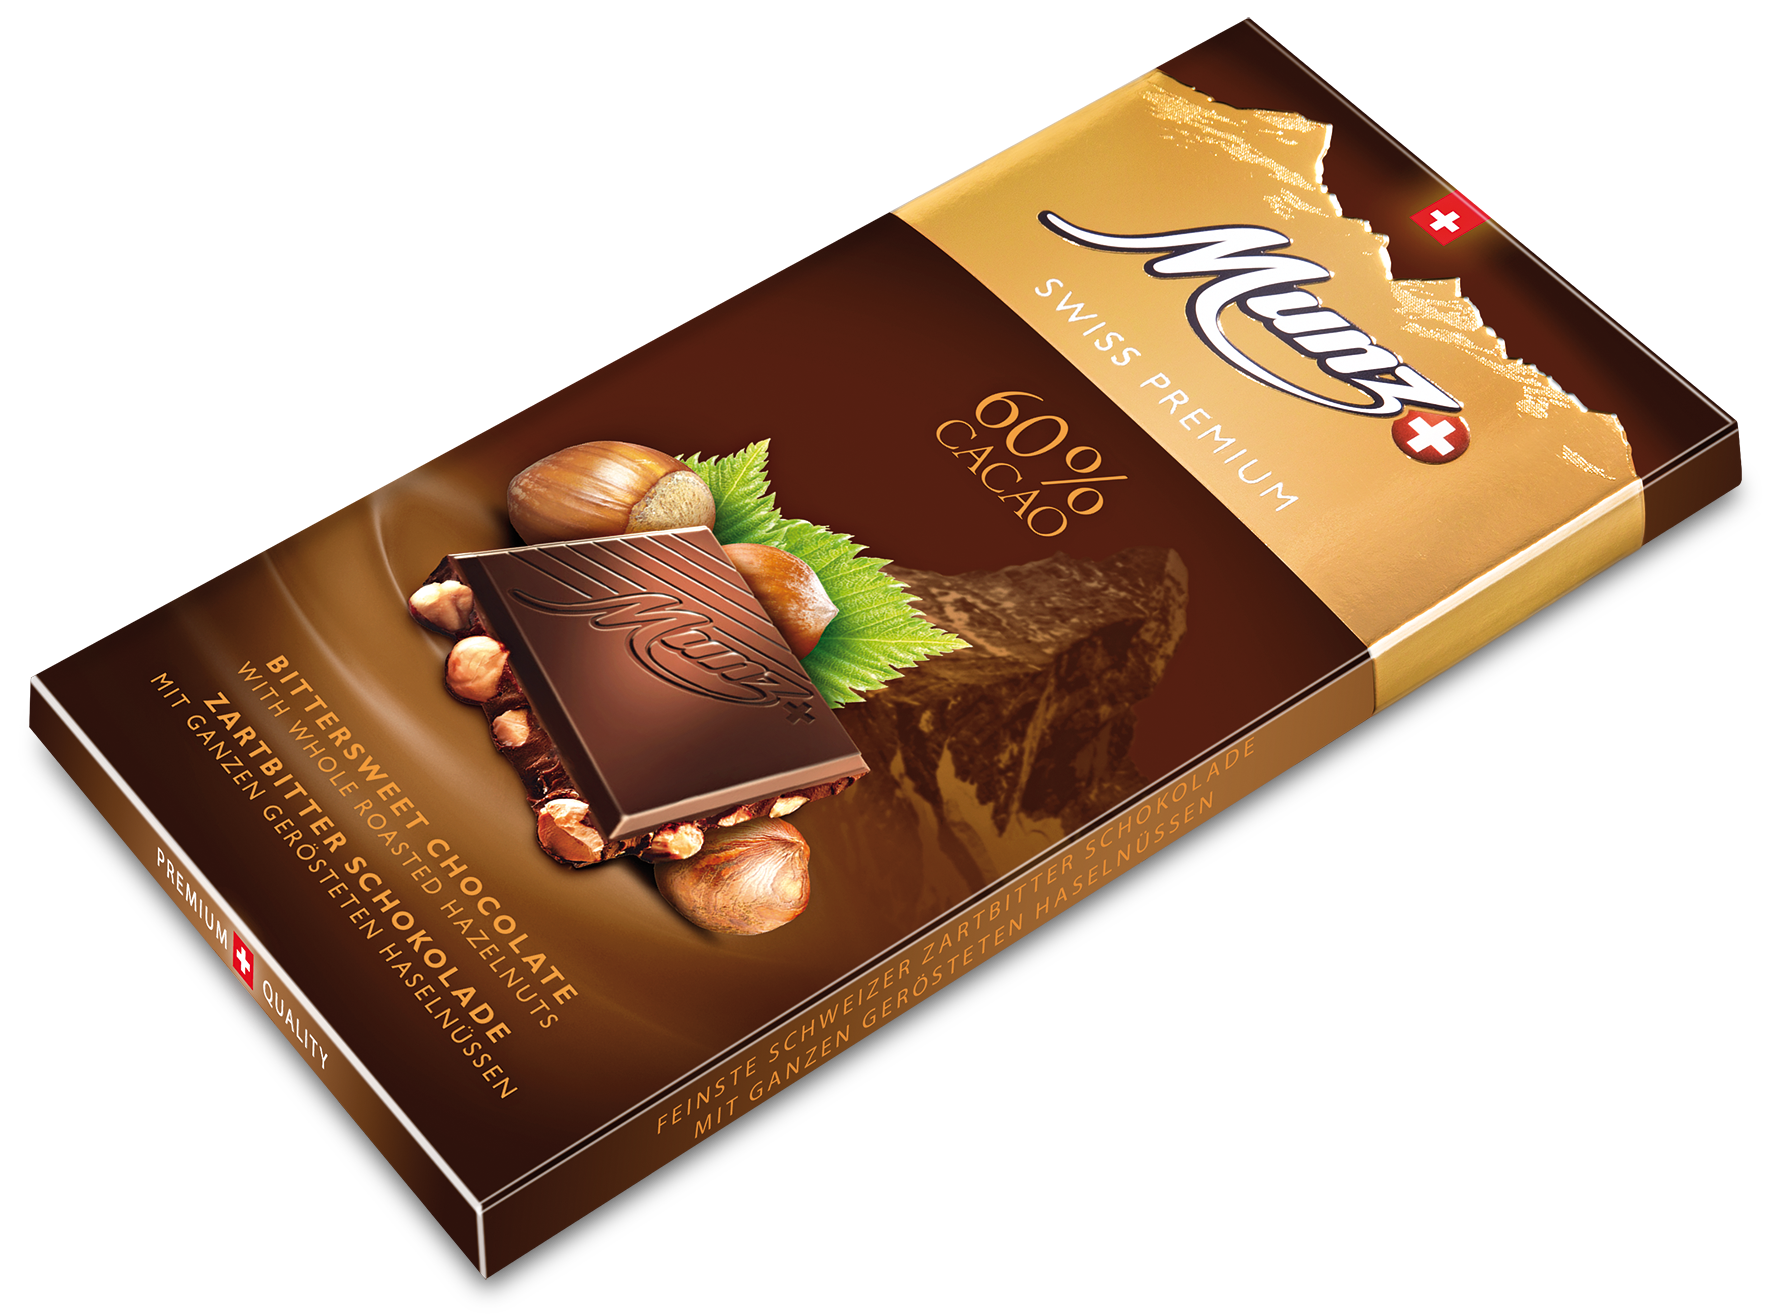 Горький шоколад MUNZ 60% какао с обжаренным фундуком 100г